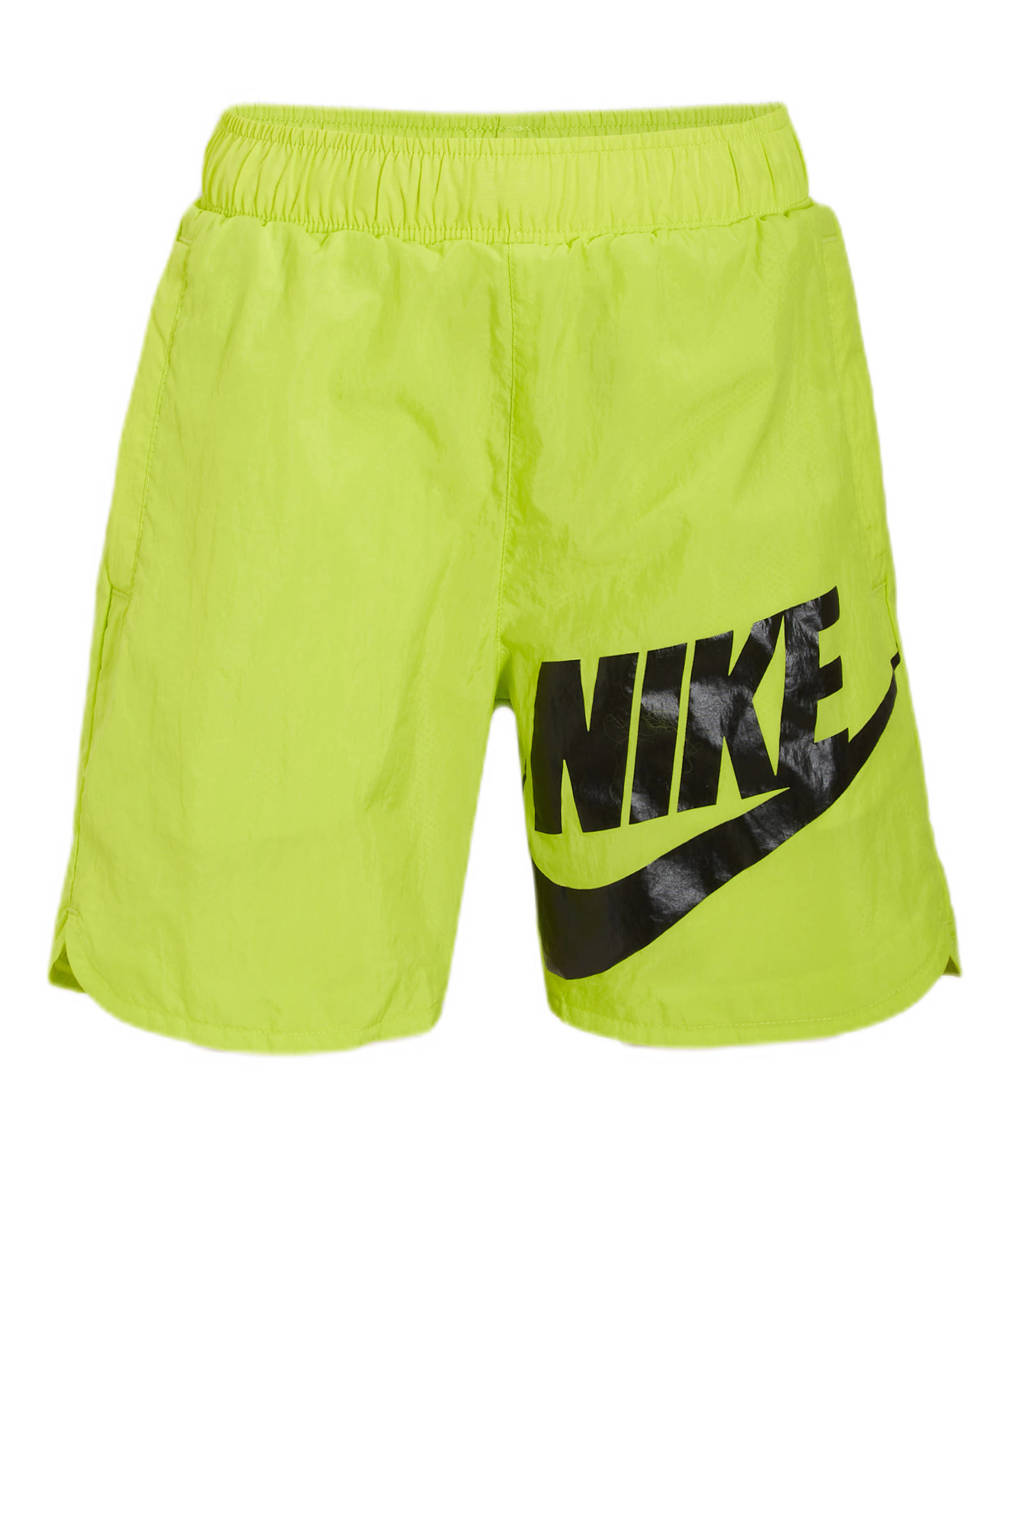 Nike short limegroen/zwart